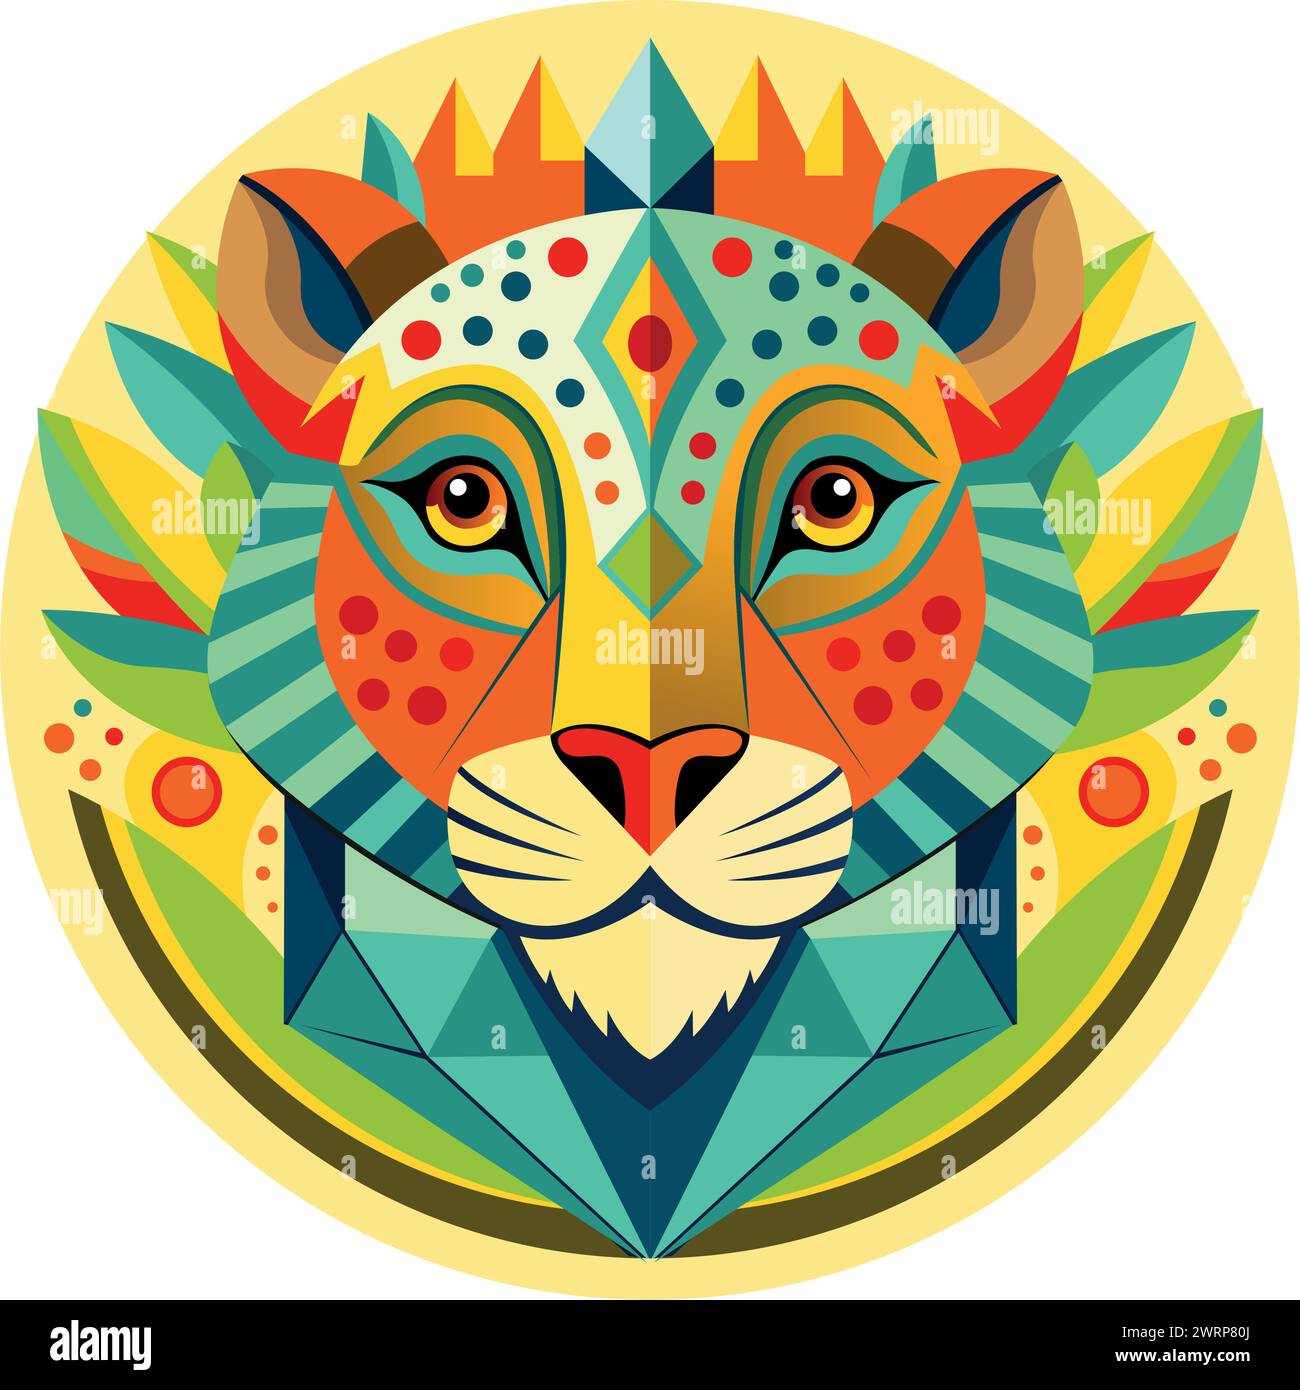 Vue avant du masque africain en forme de tête de léopard dans un style géométrique avec des couleurs chaudes. Image vectorielle Illustration de Vecteur